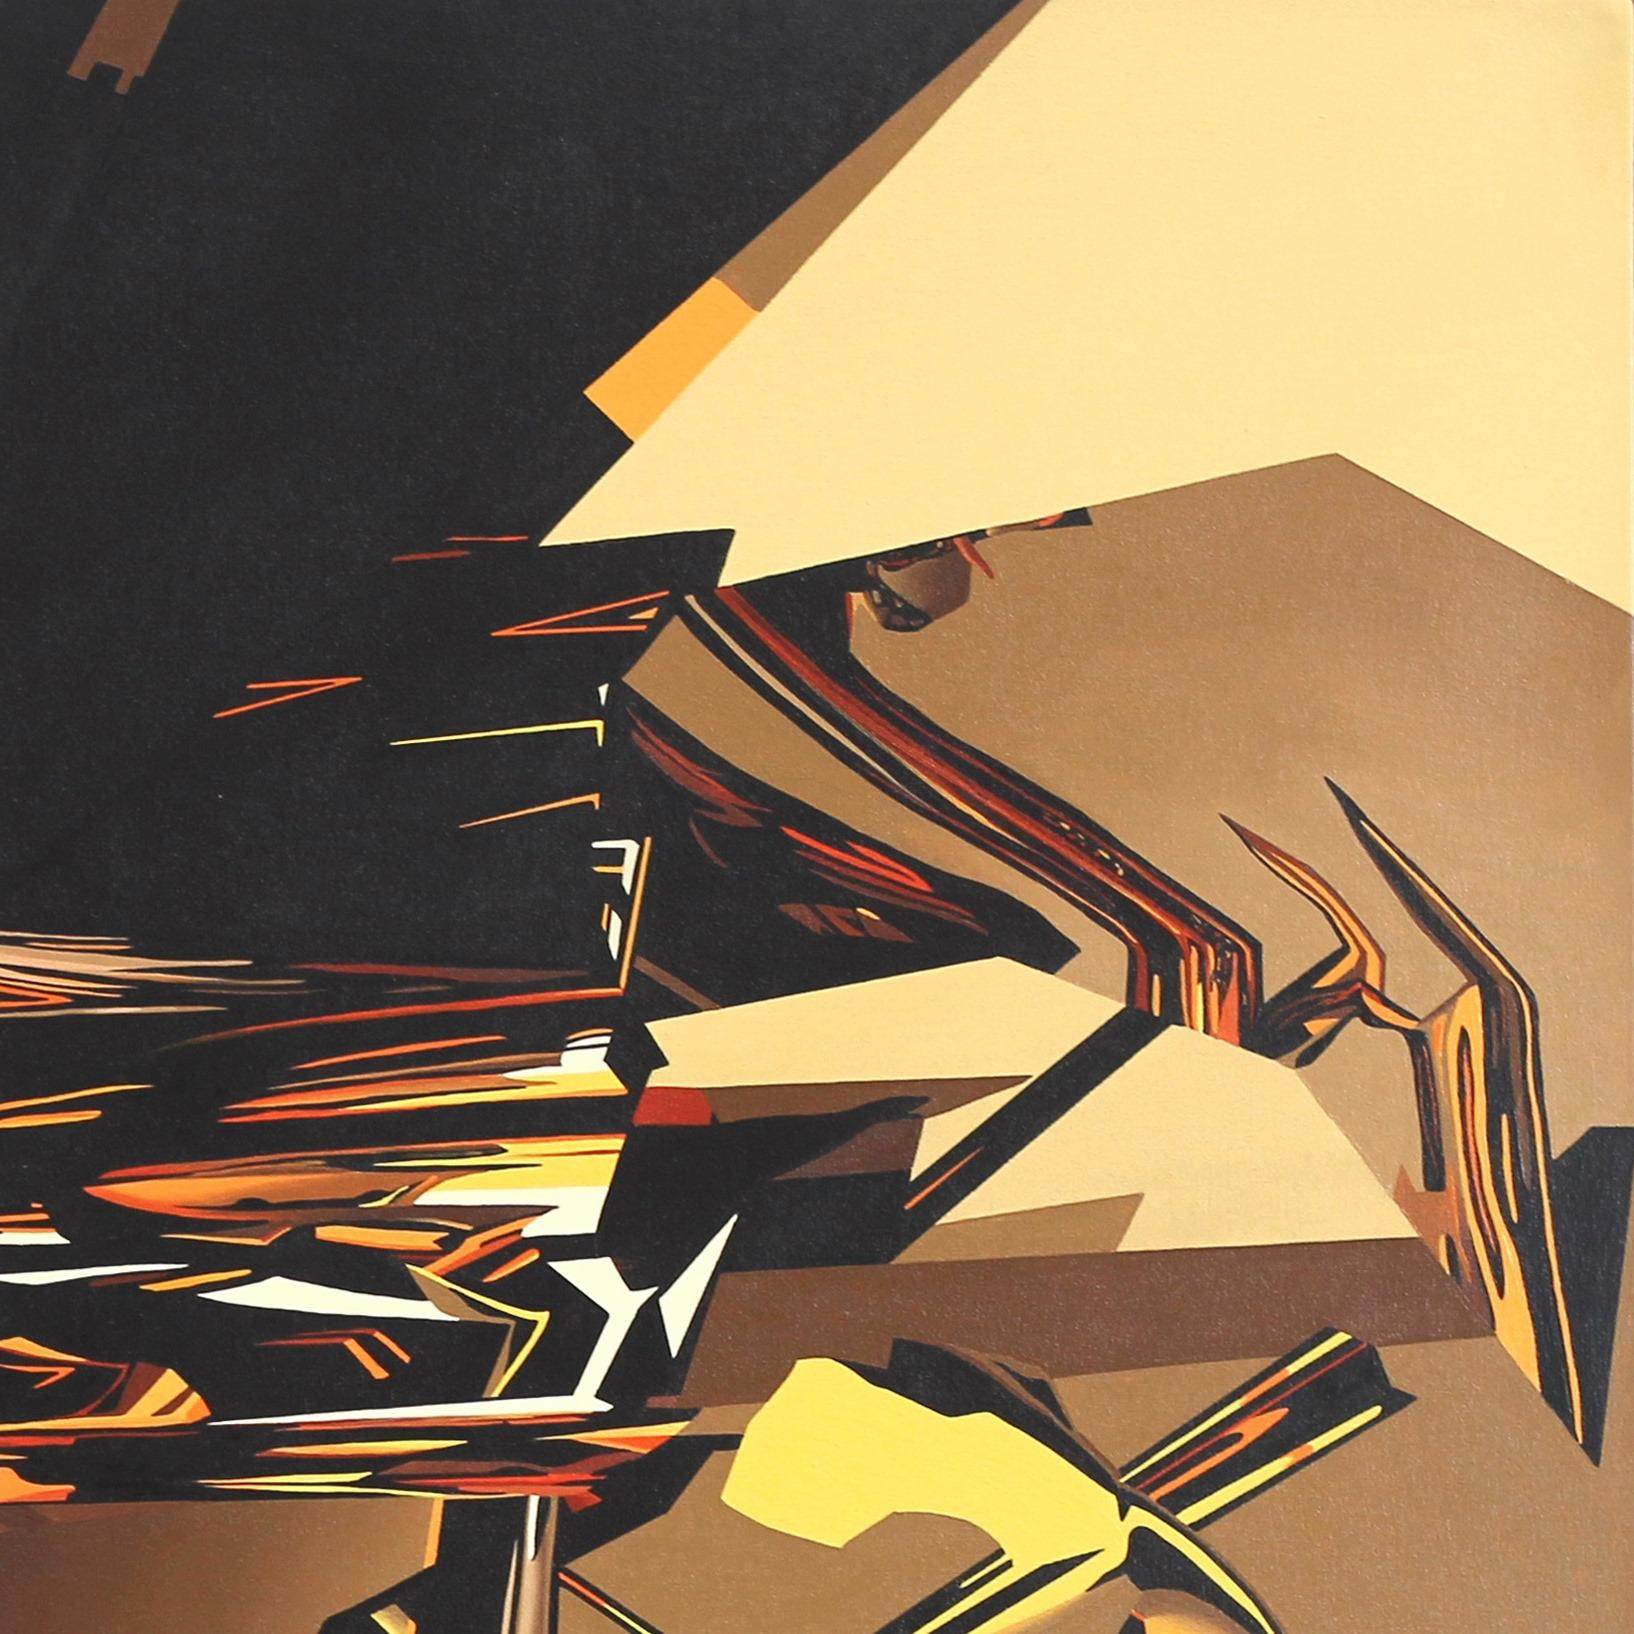 Combinant la peinture à l'huile photoréaliste sur toile avec l'illusion des graphiques créés par ordinateur, les œuvres d'art originales de Jose Carlos Zubiaur transcendent la profondeur d'un objet tridimensionnel hyperréaliste. À chaque coup de